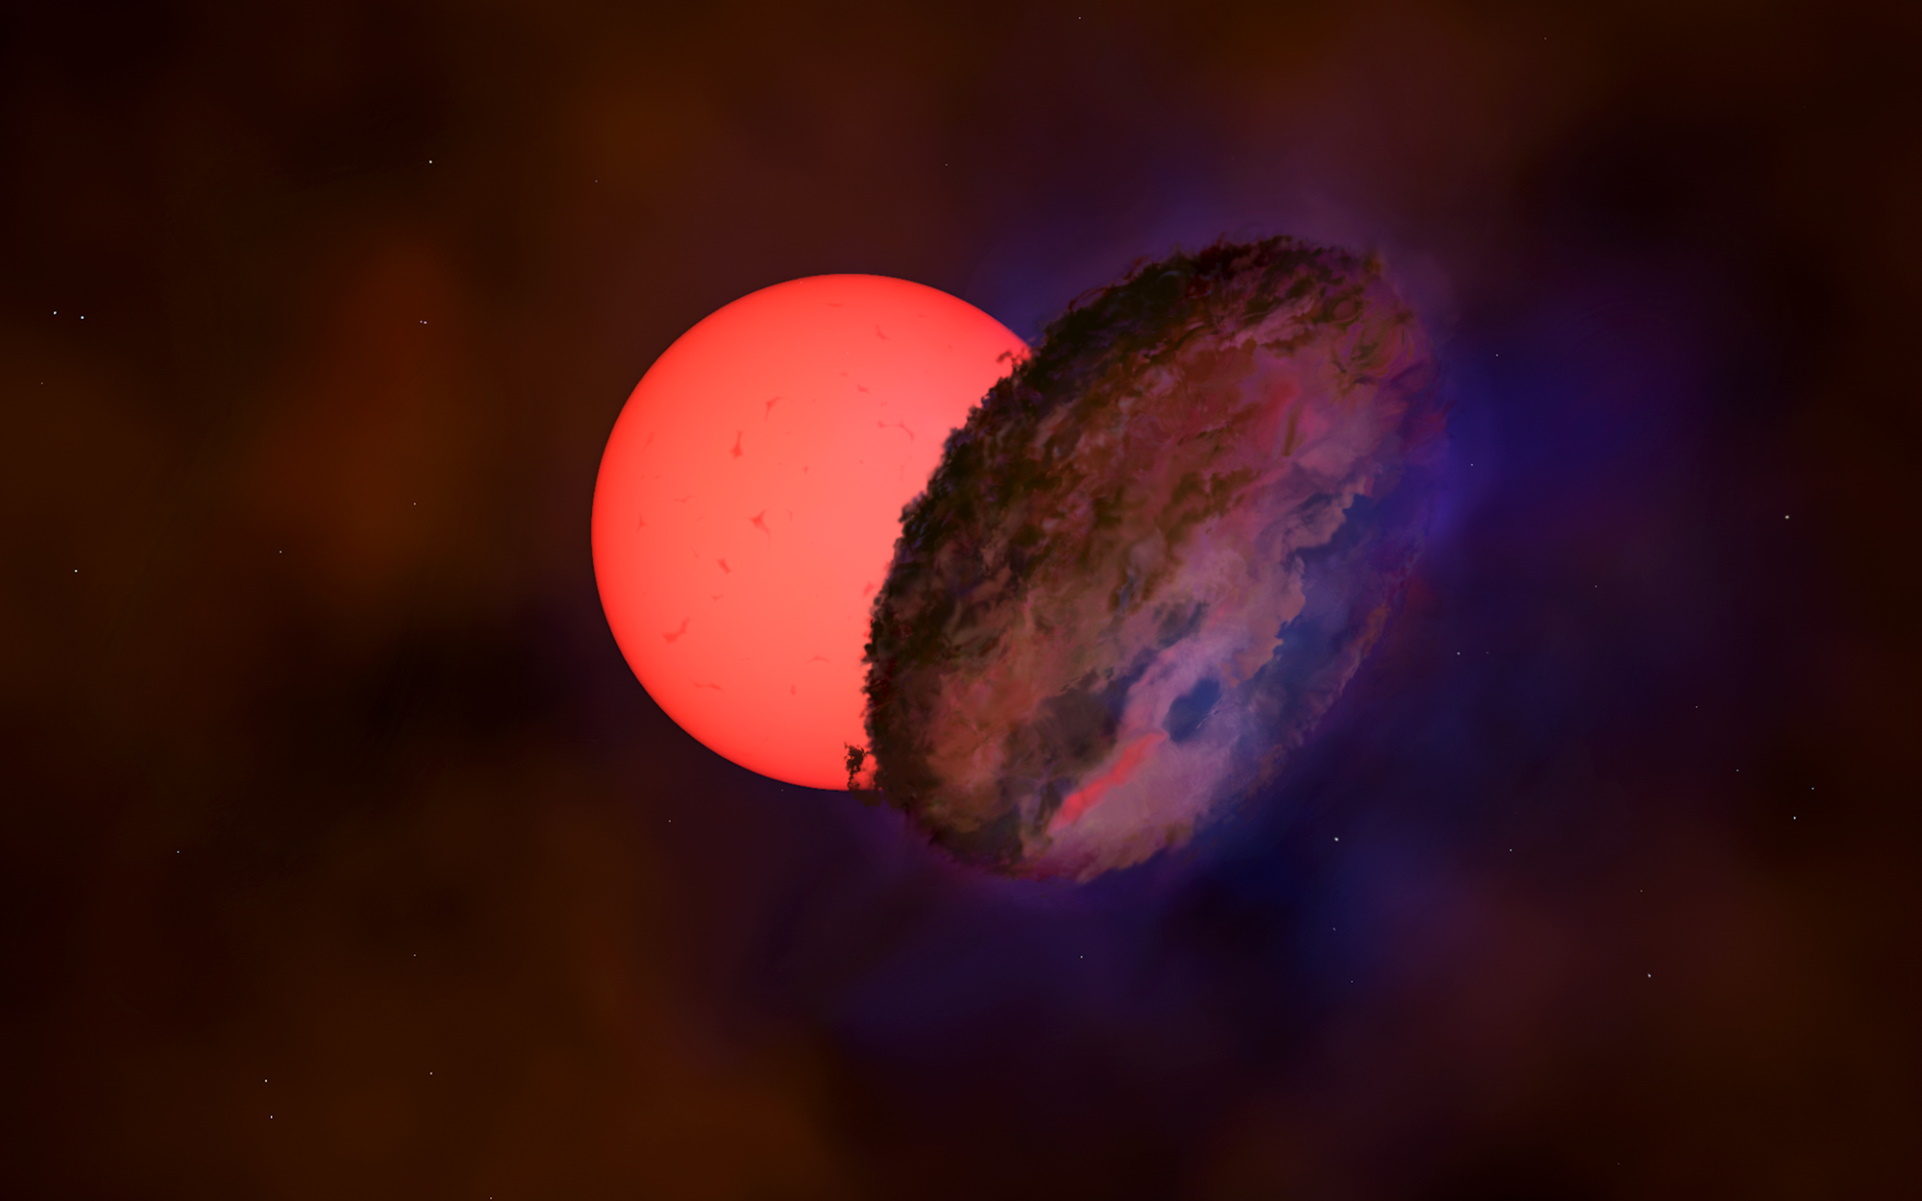 Ανακαλύφθηκε γιγάντιο άστρο – Απέχει 25.000 έτη φωτός από τη Γη και «αναβοσβήνει» (pic)